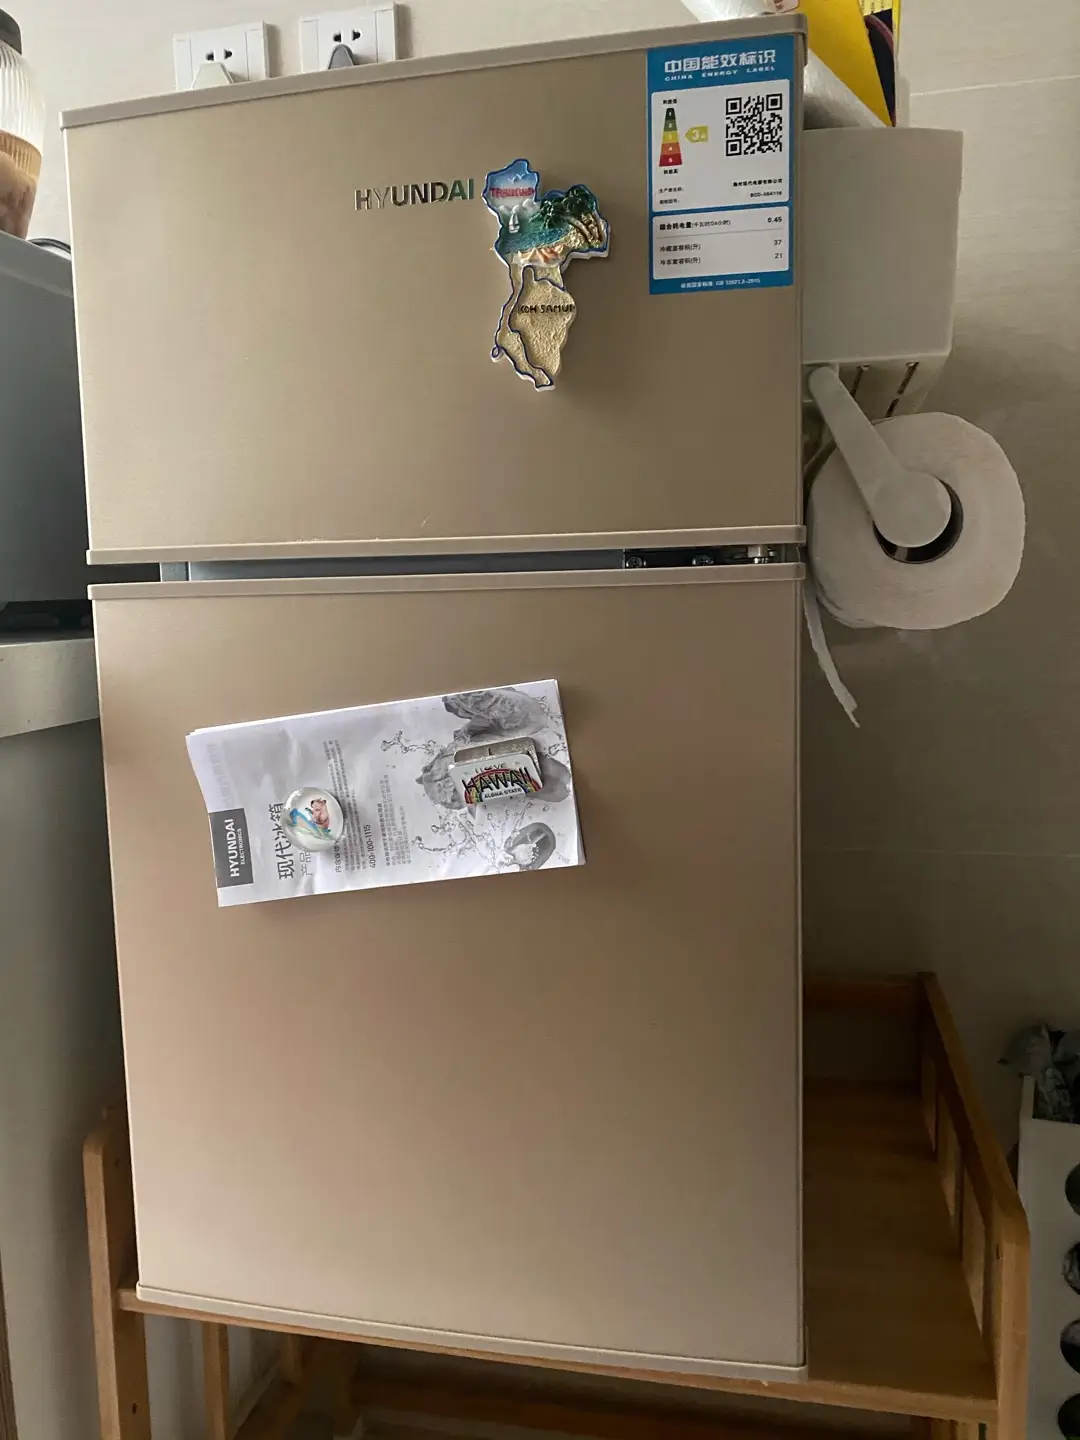 真实评测现代冰箱怎么样好不好质量如何? 韩国现代冰箱怎么样? 现代品牌的冰箱怎么样?